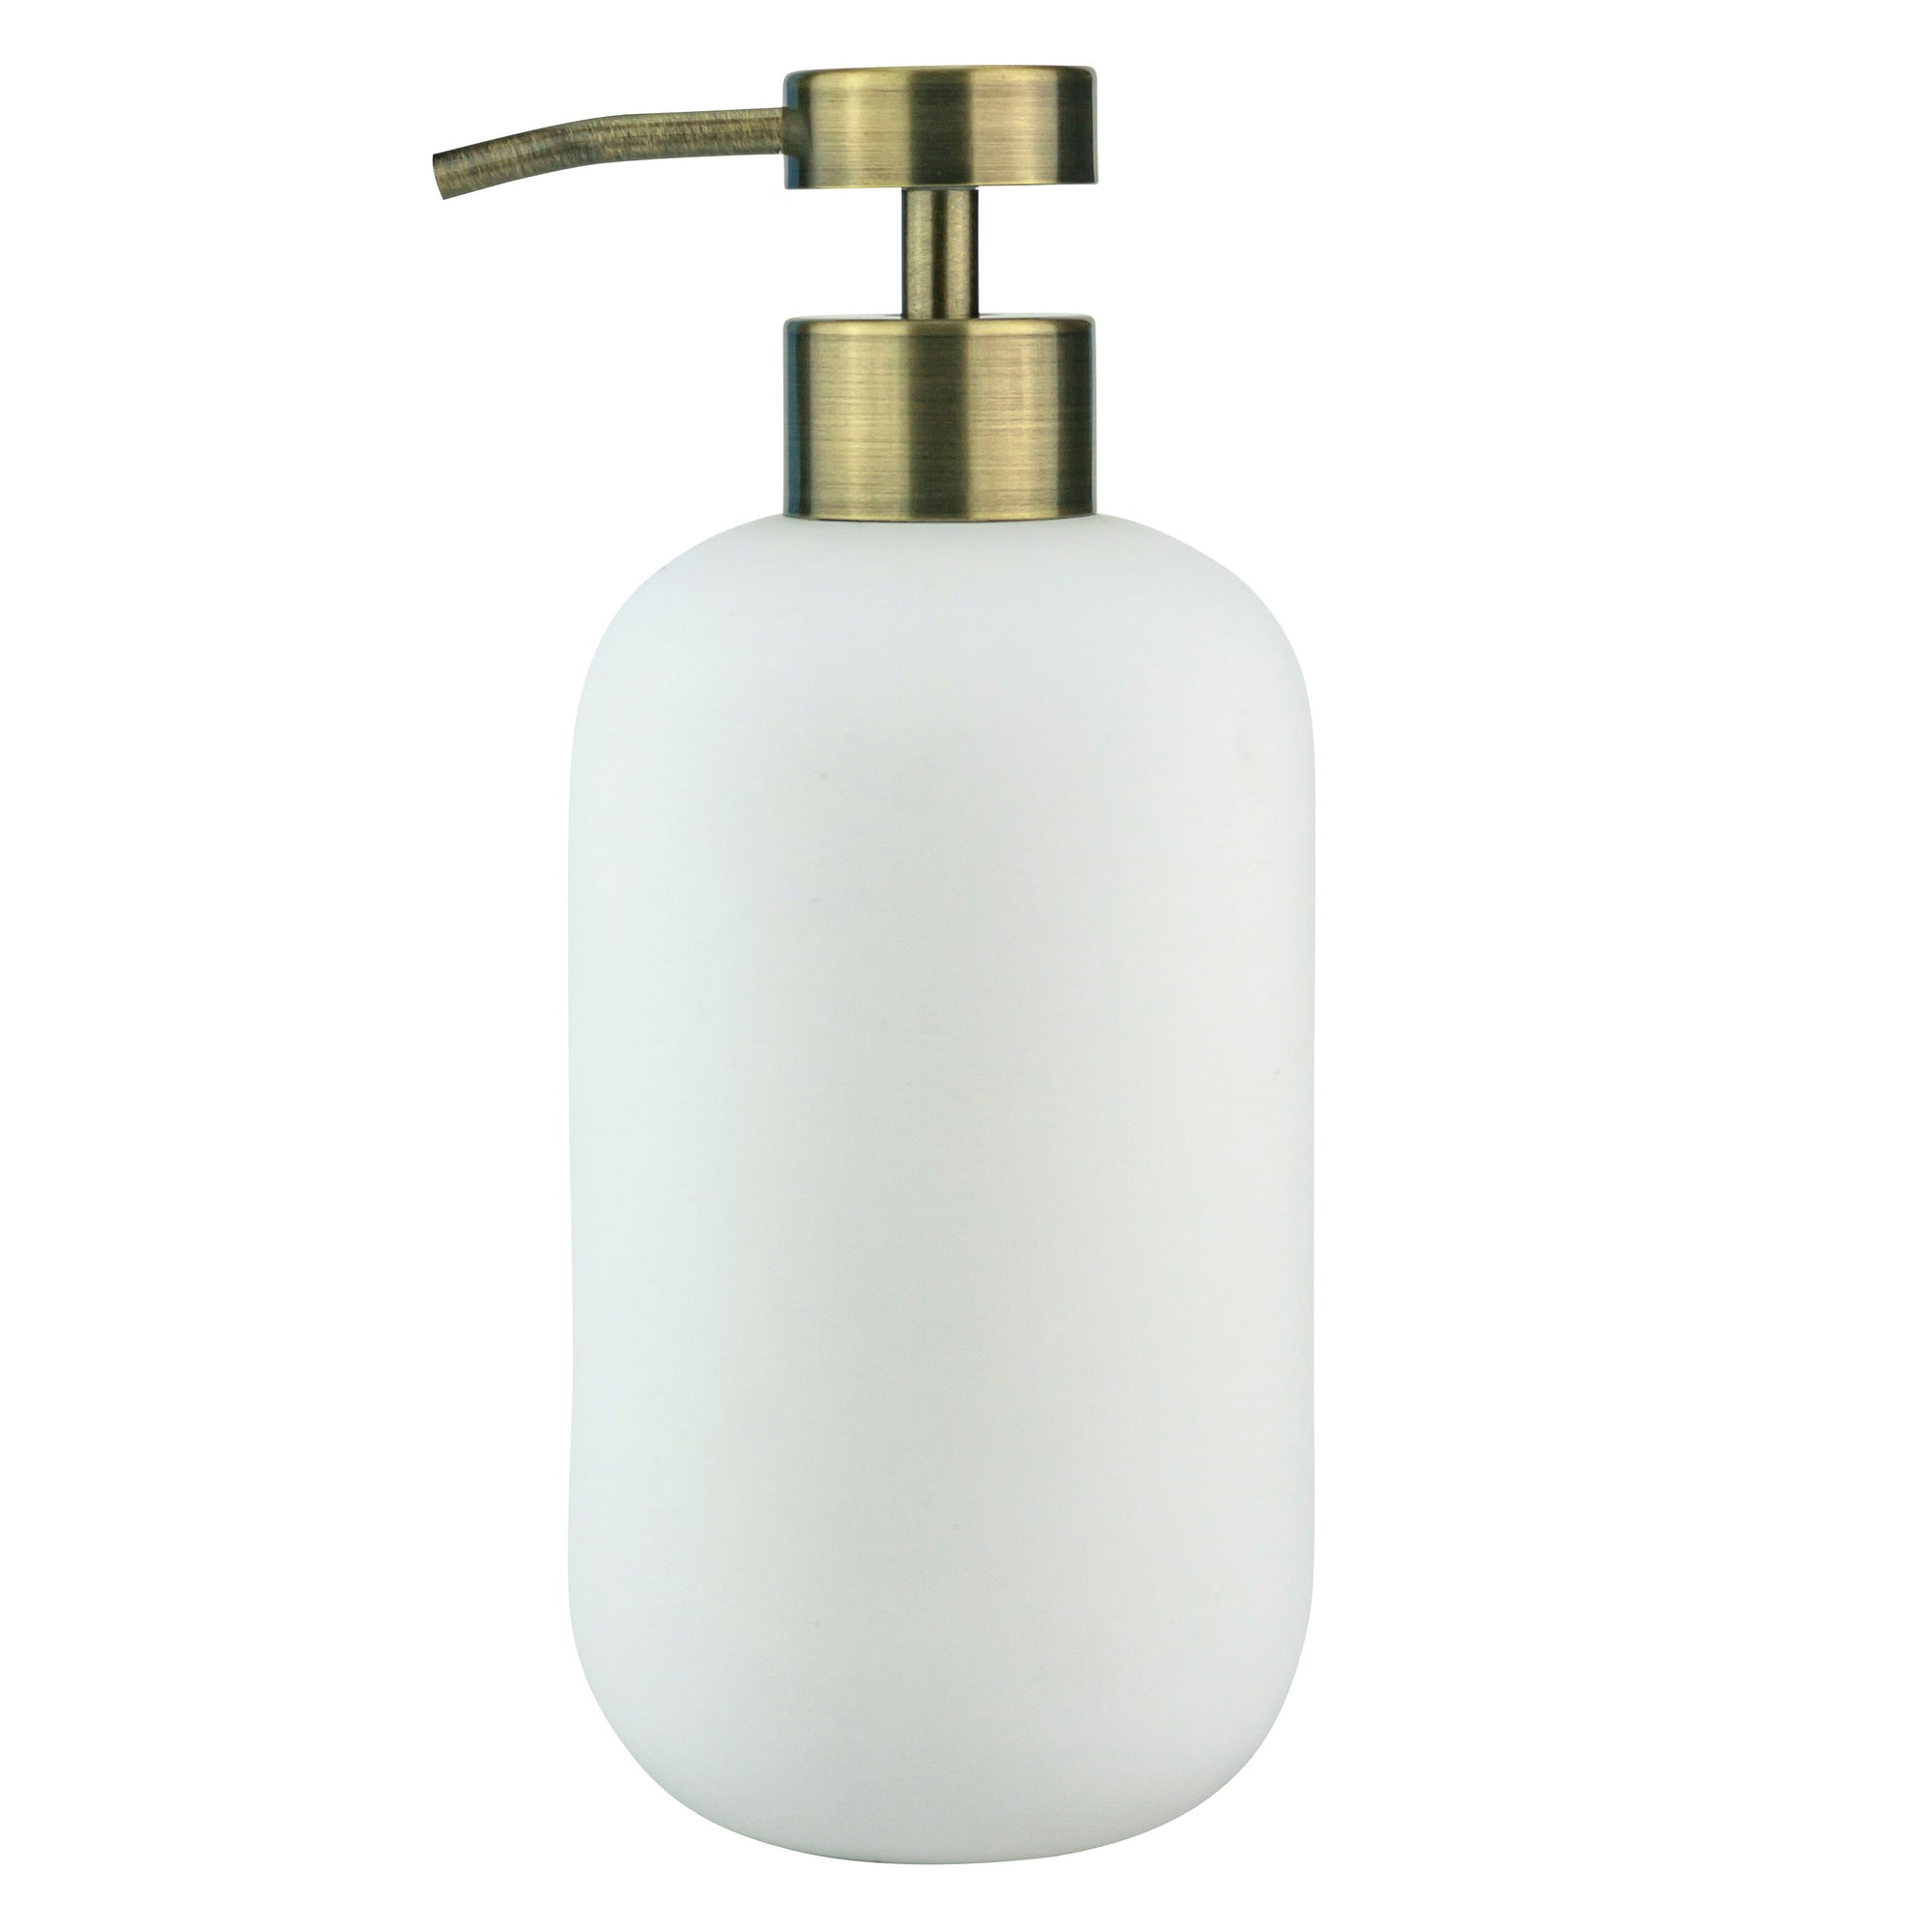 LOTUS Soap Dispenser- White